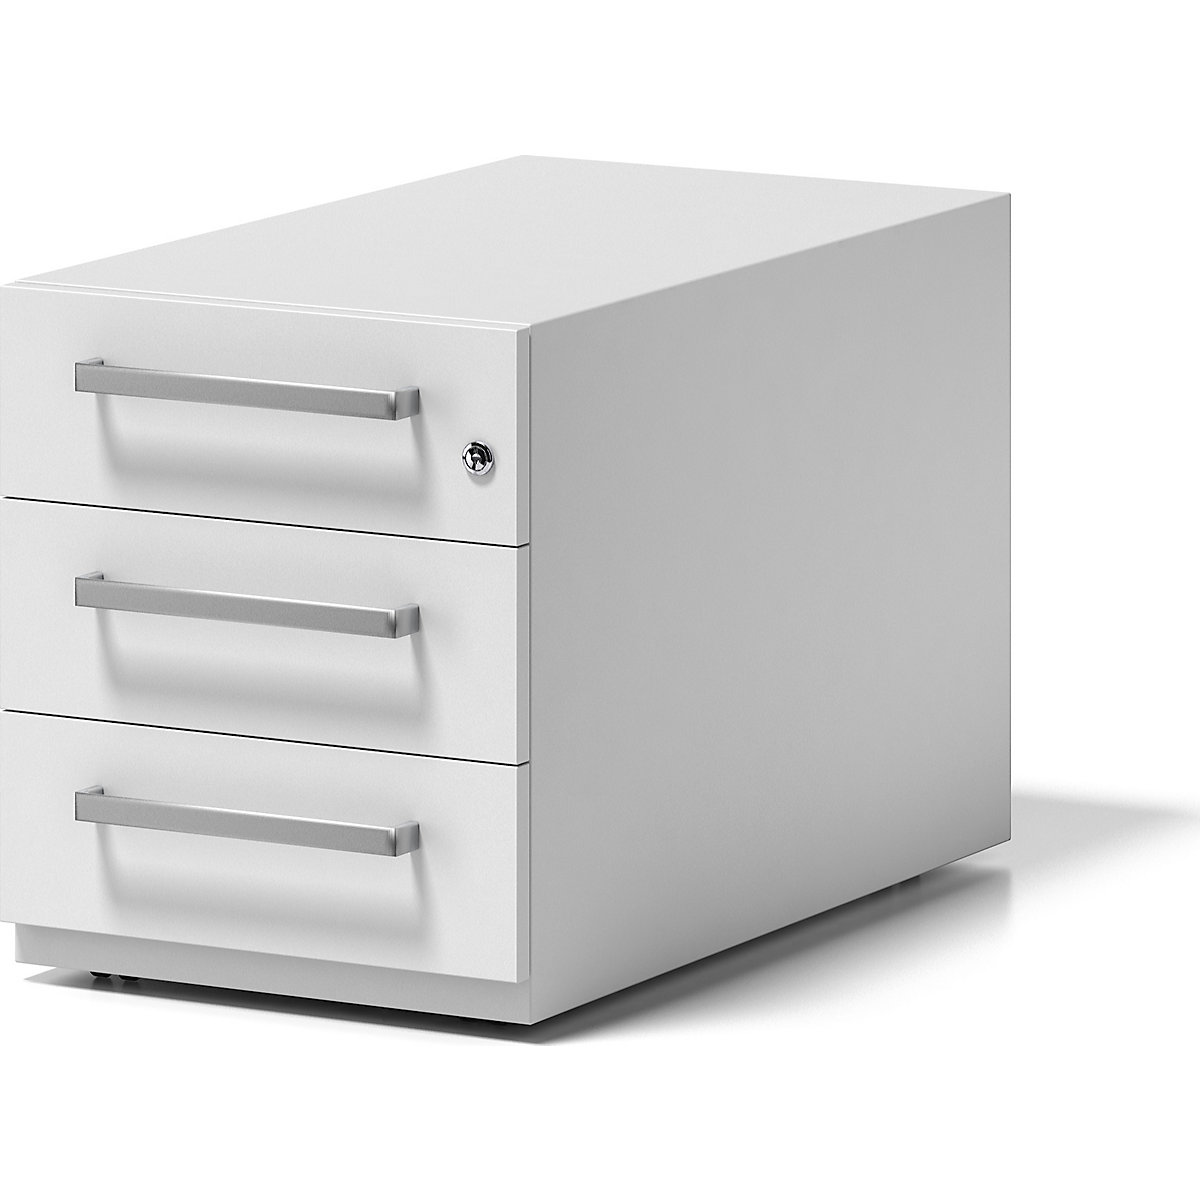 Pojazdný kontajner Note™, s 3 univerzálnymi zásuvkami – BISLEY